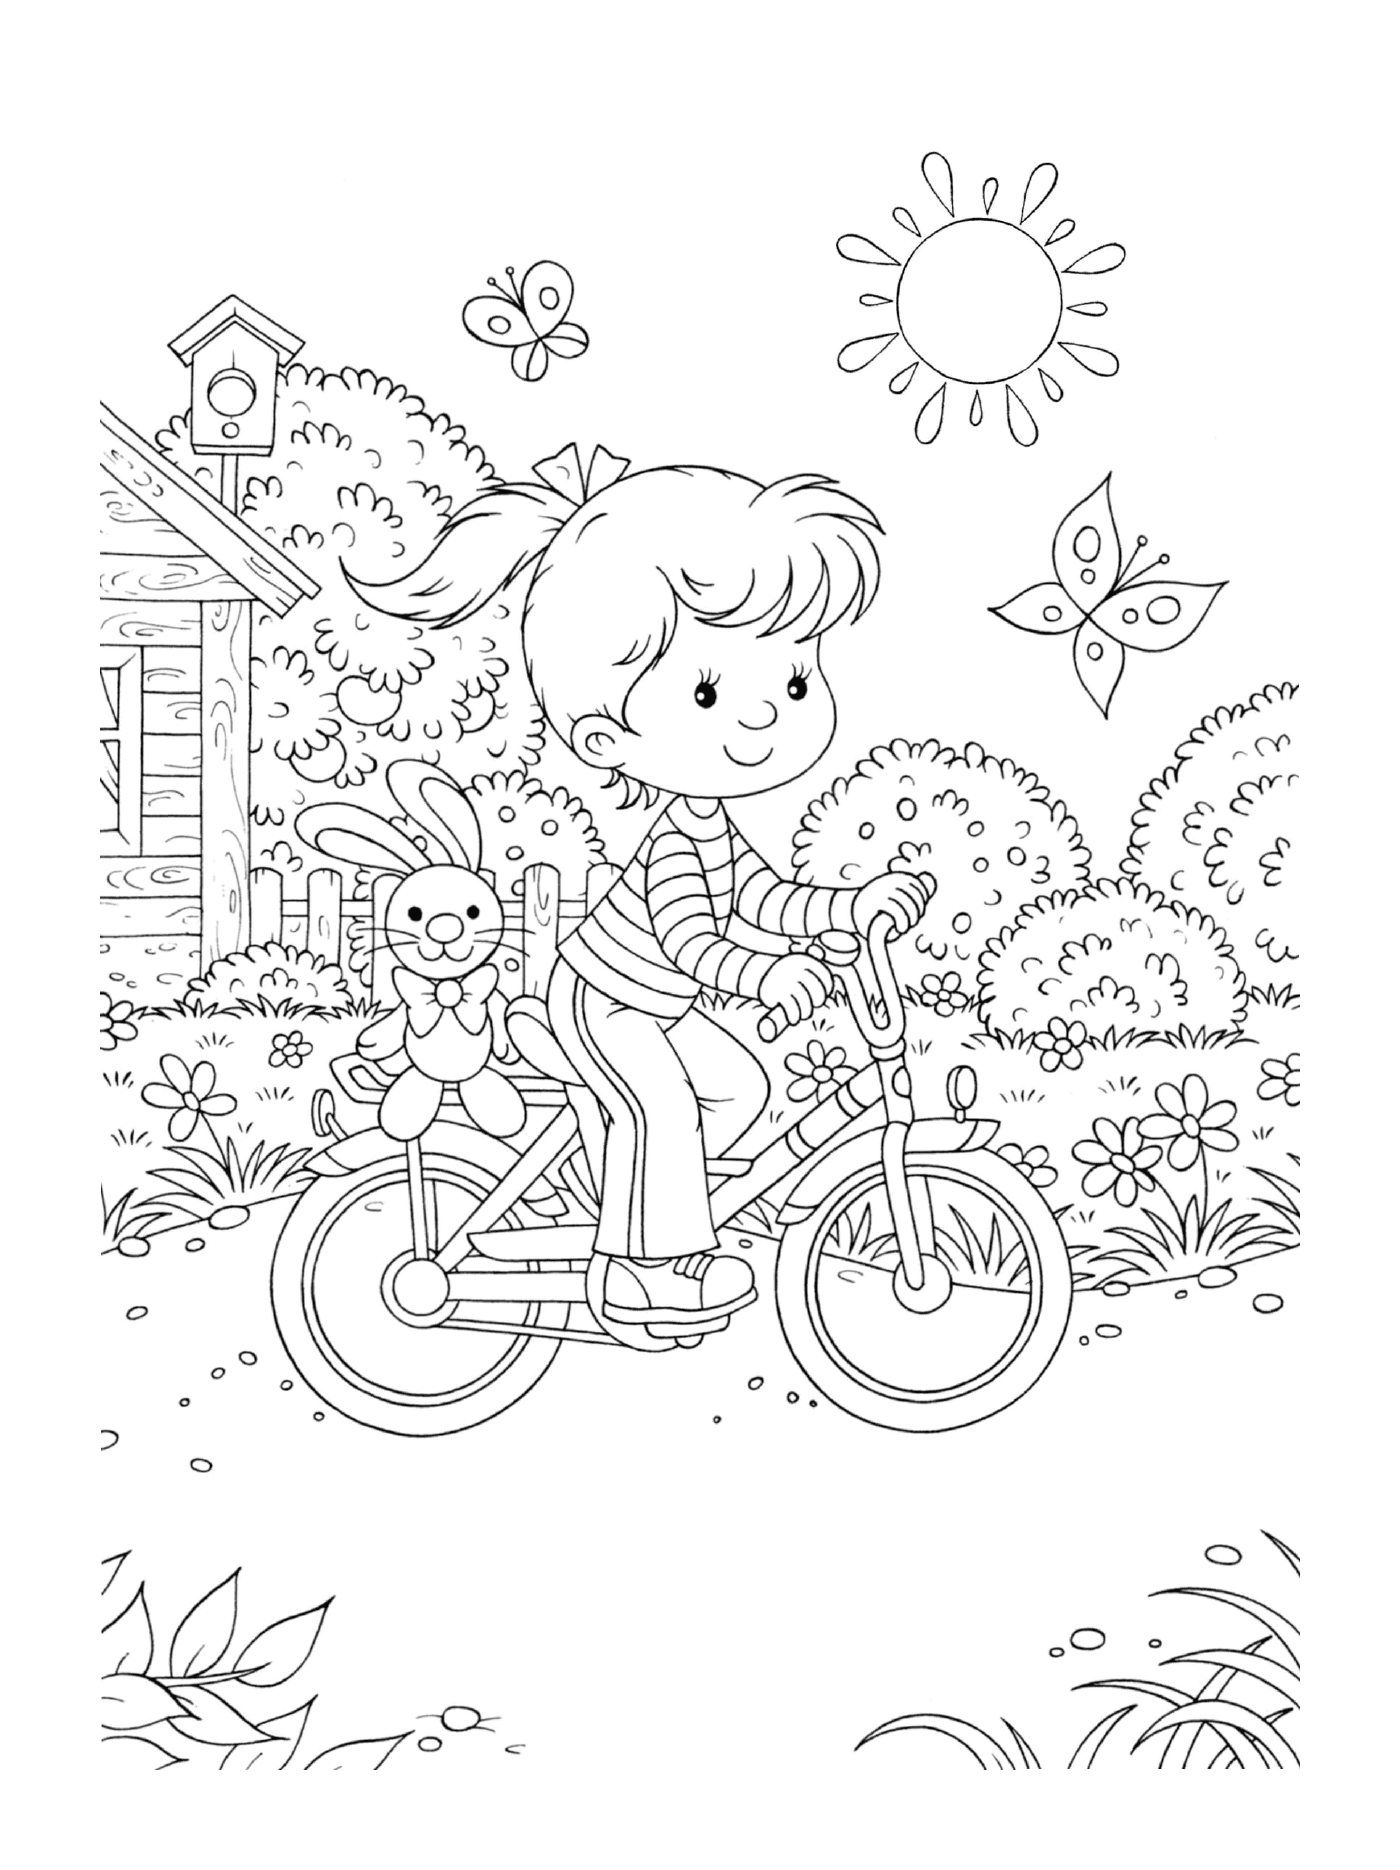  Una niña monta una bicicleta con un conejo en la espalda 